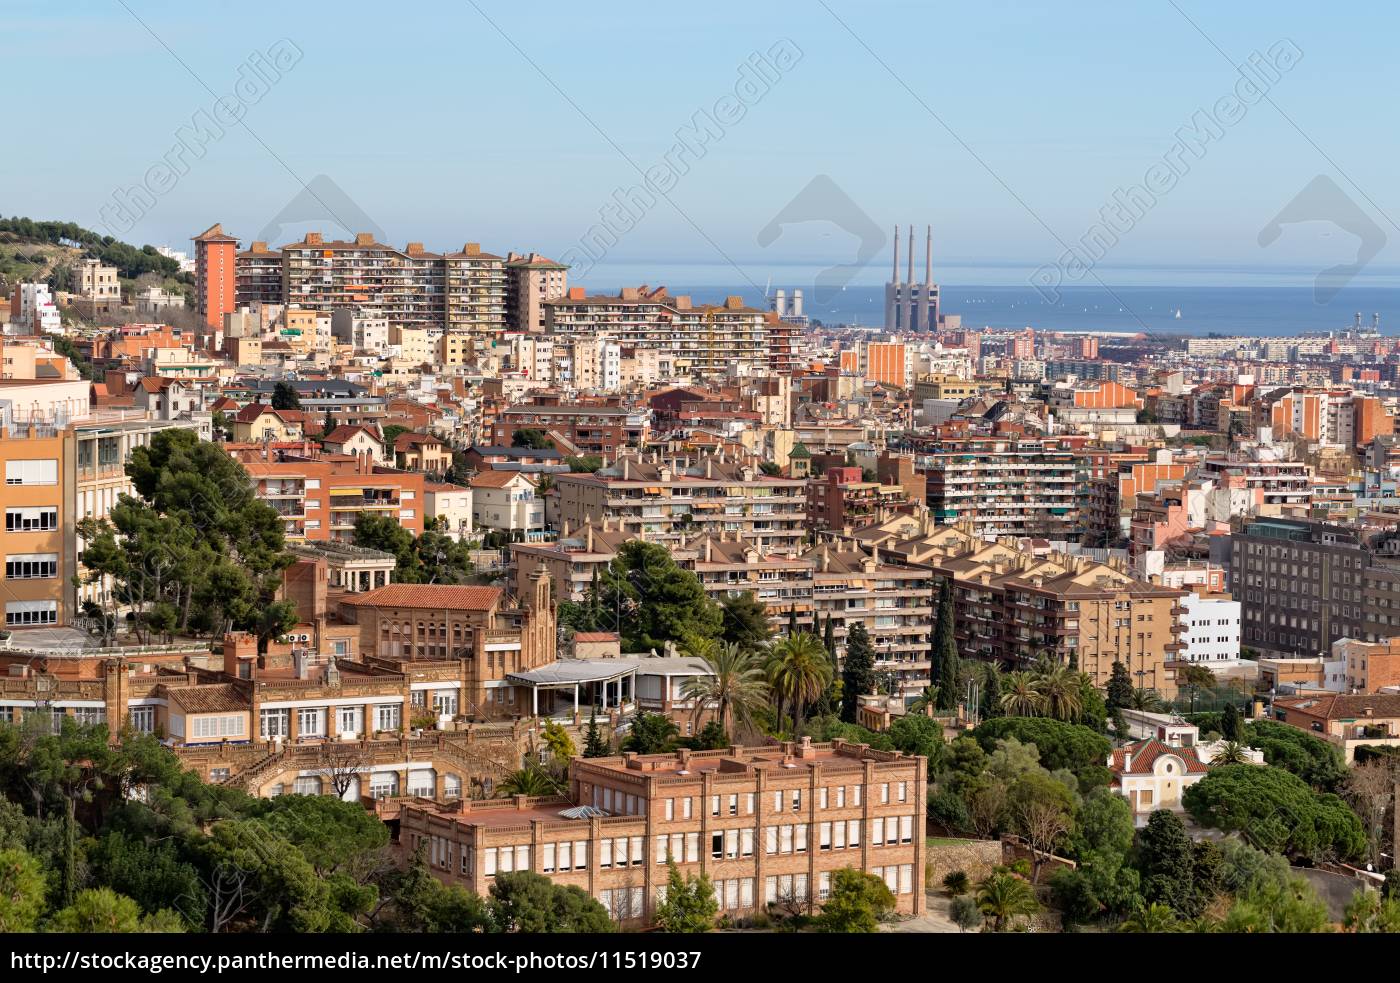 Schone Aussicht Auf Barcelona Von Oben Stockfoto 11519037 Bildagentur Panthermedia